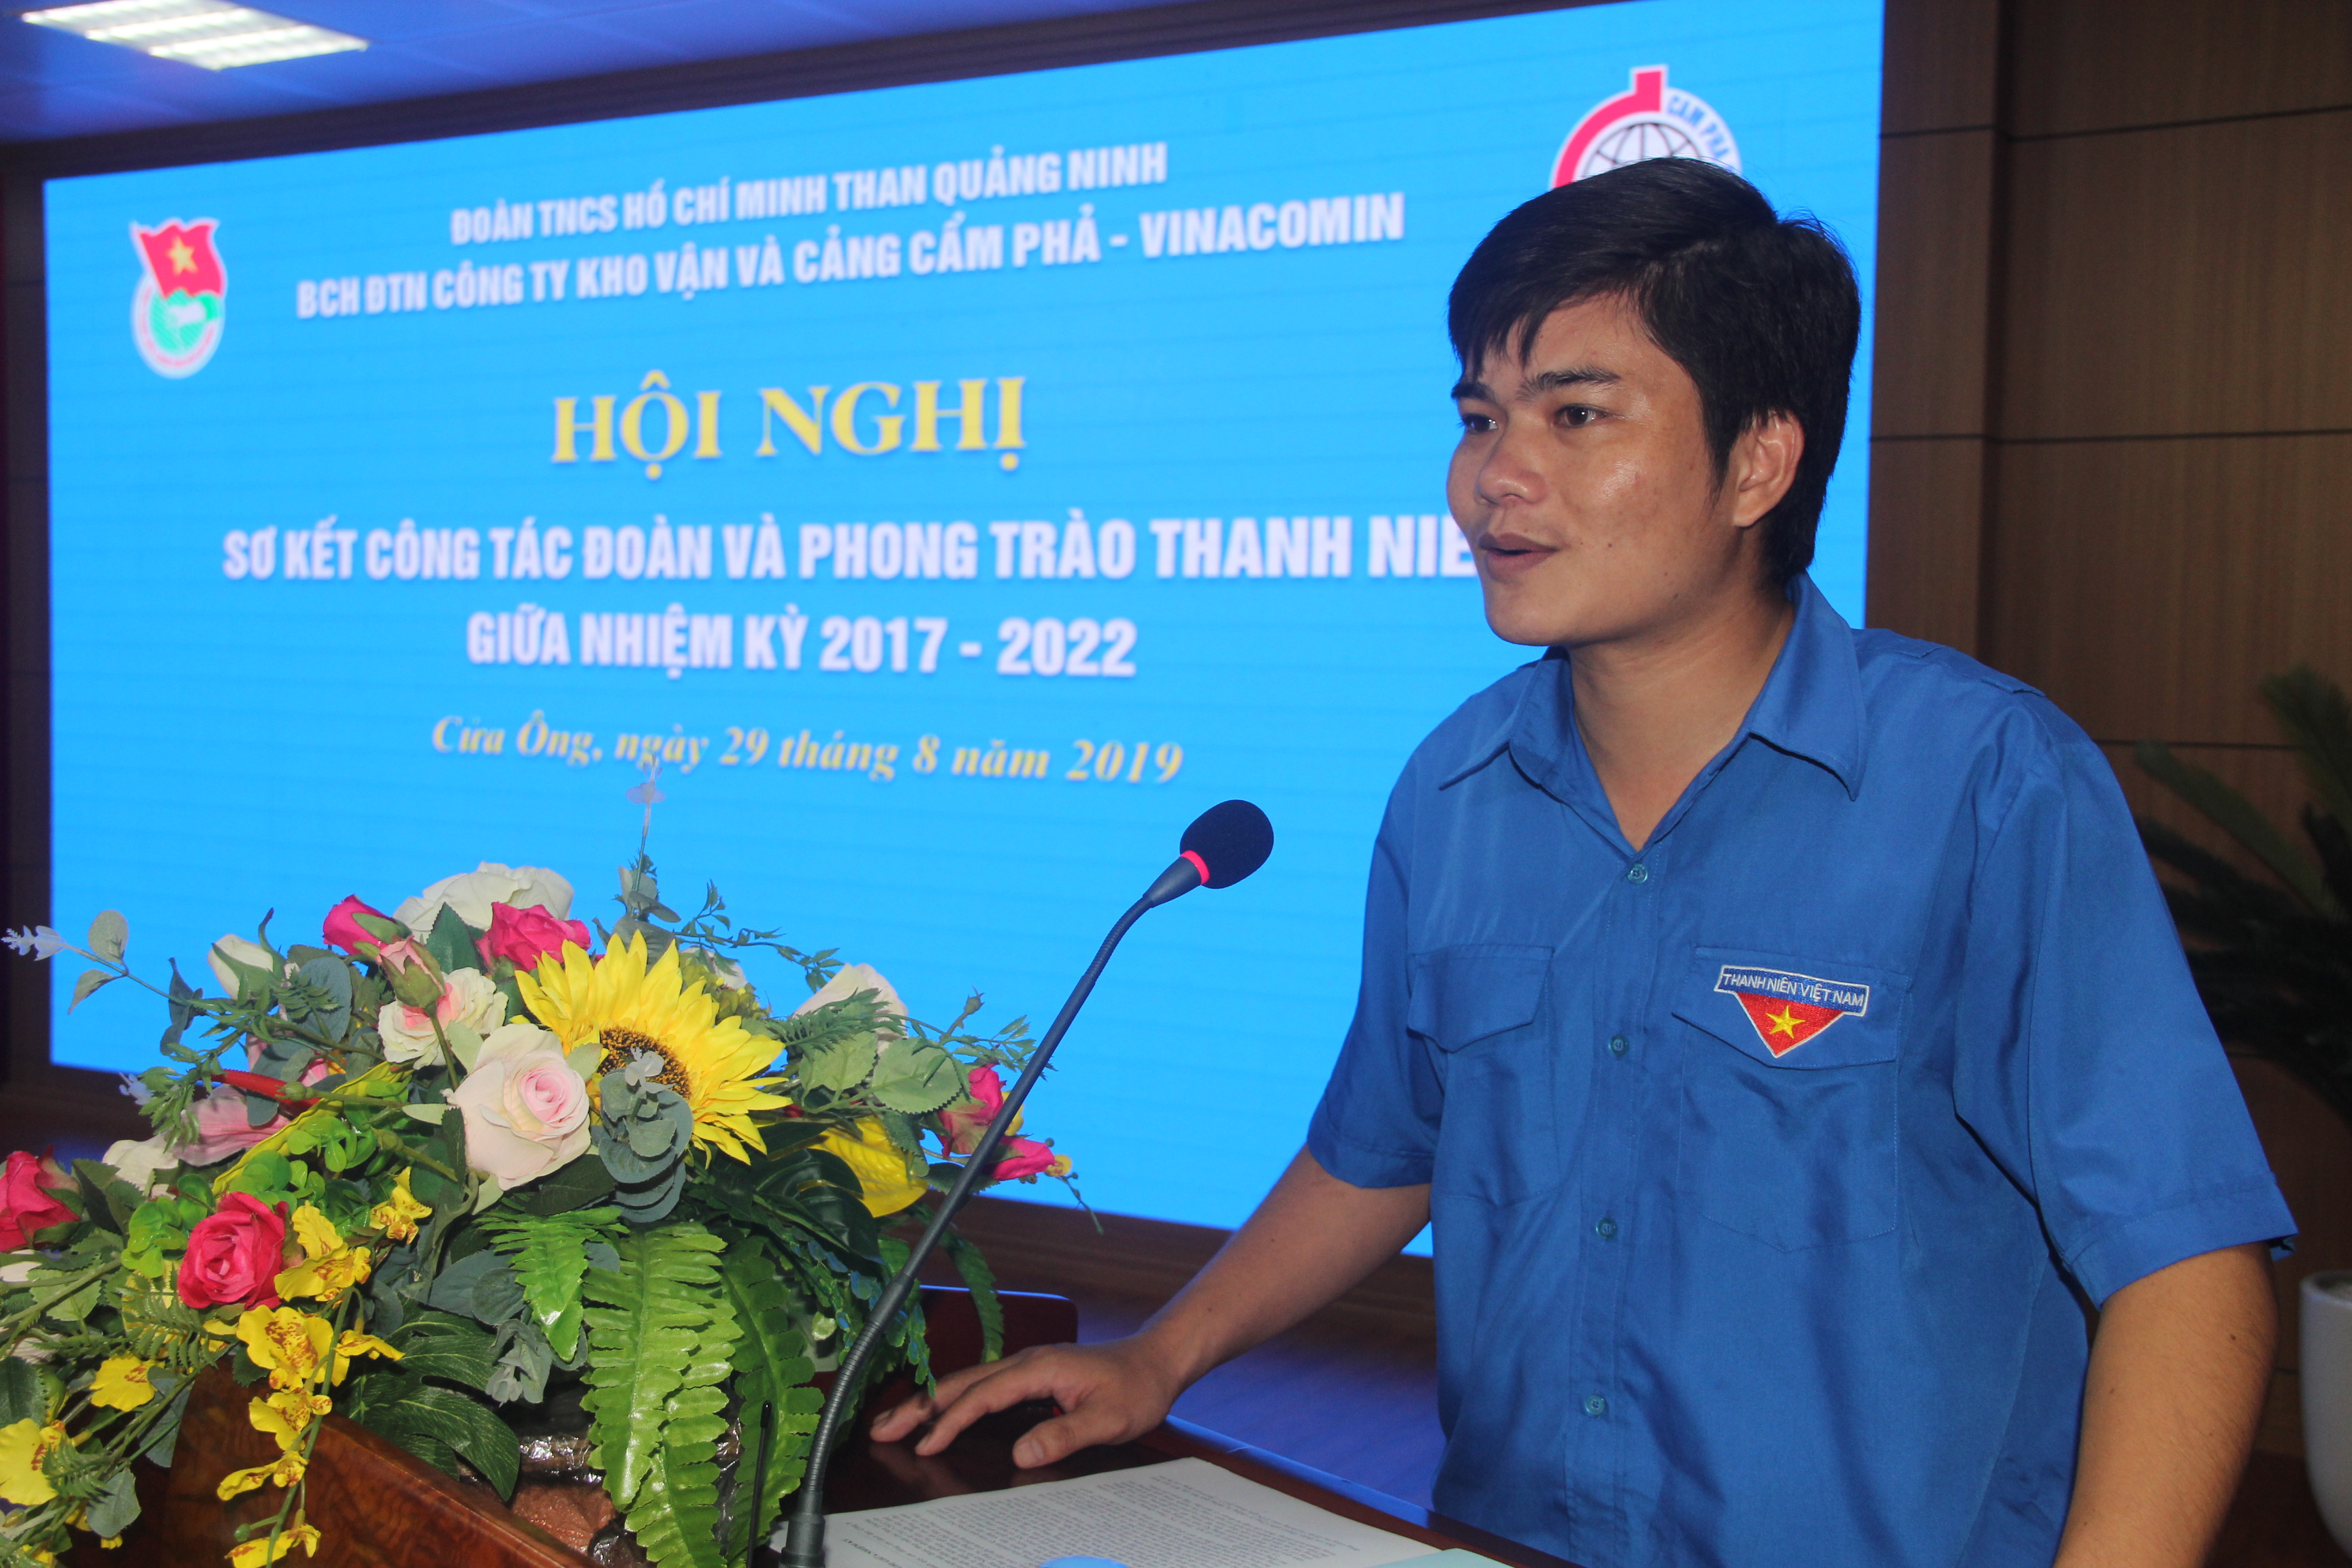 ĐTN Công ty Kho vận và cảng Cẩm Phả sơ kết công tác Đoàn và phong trào thanh niên giữa nhiệm kỳ 2017-2022